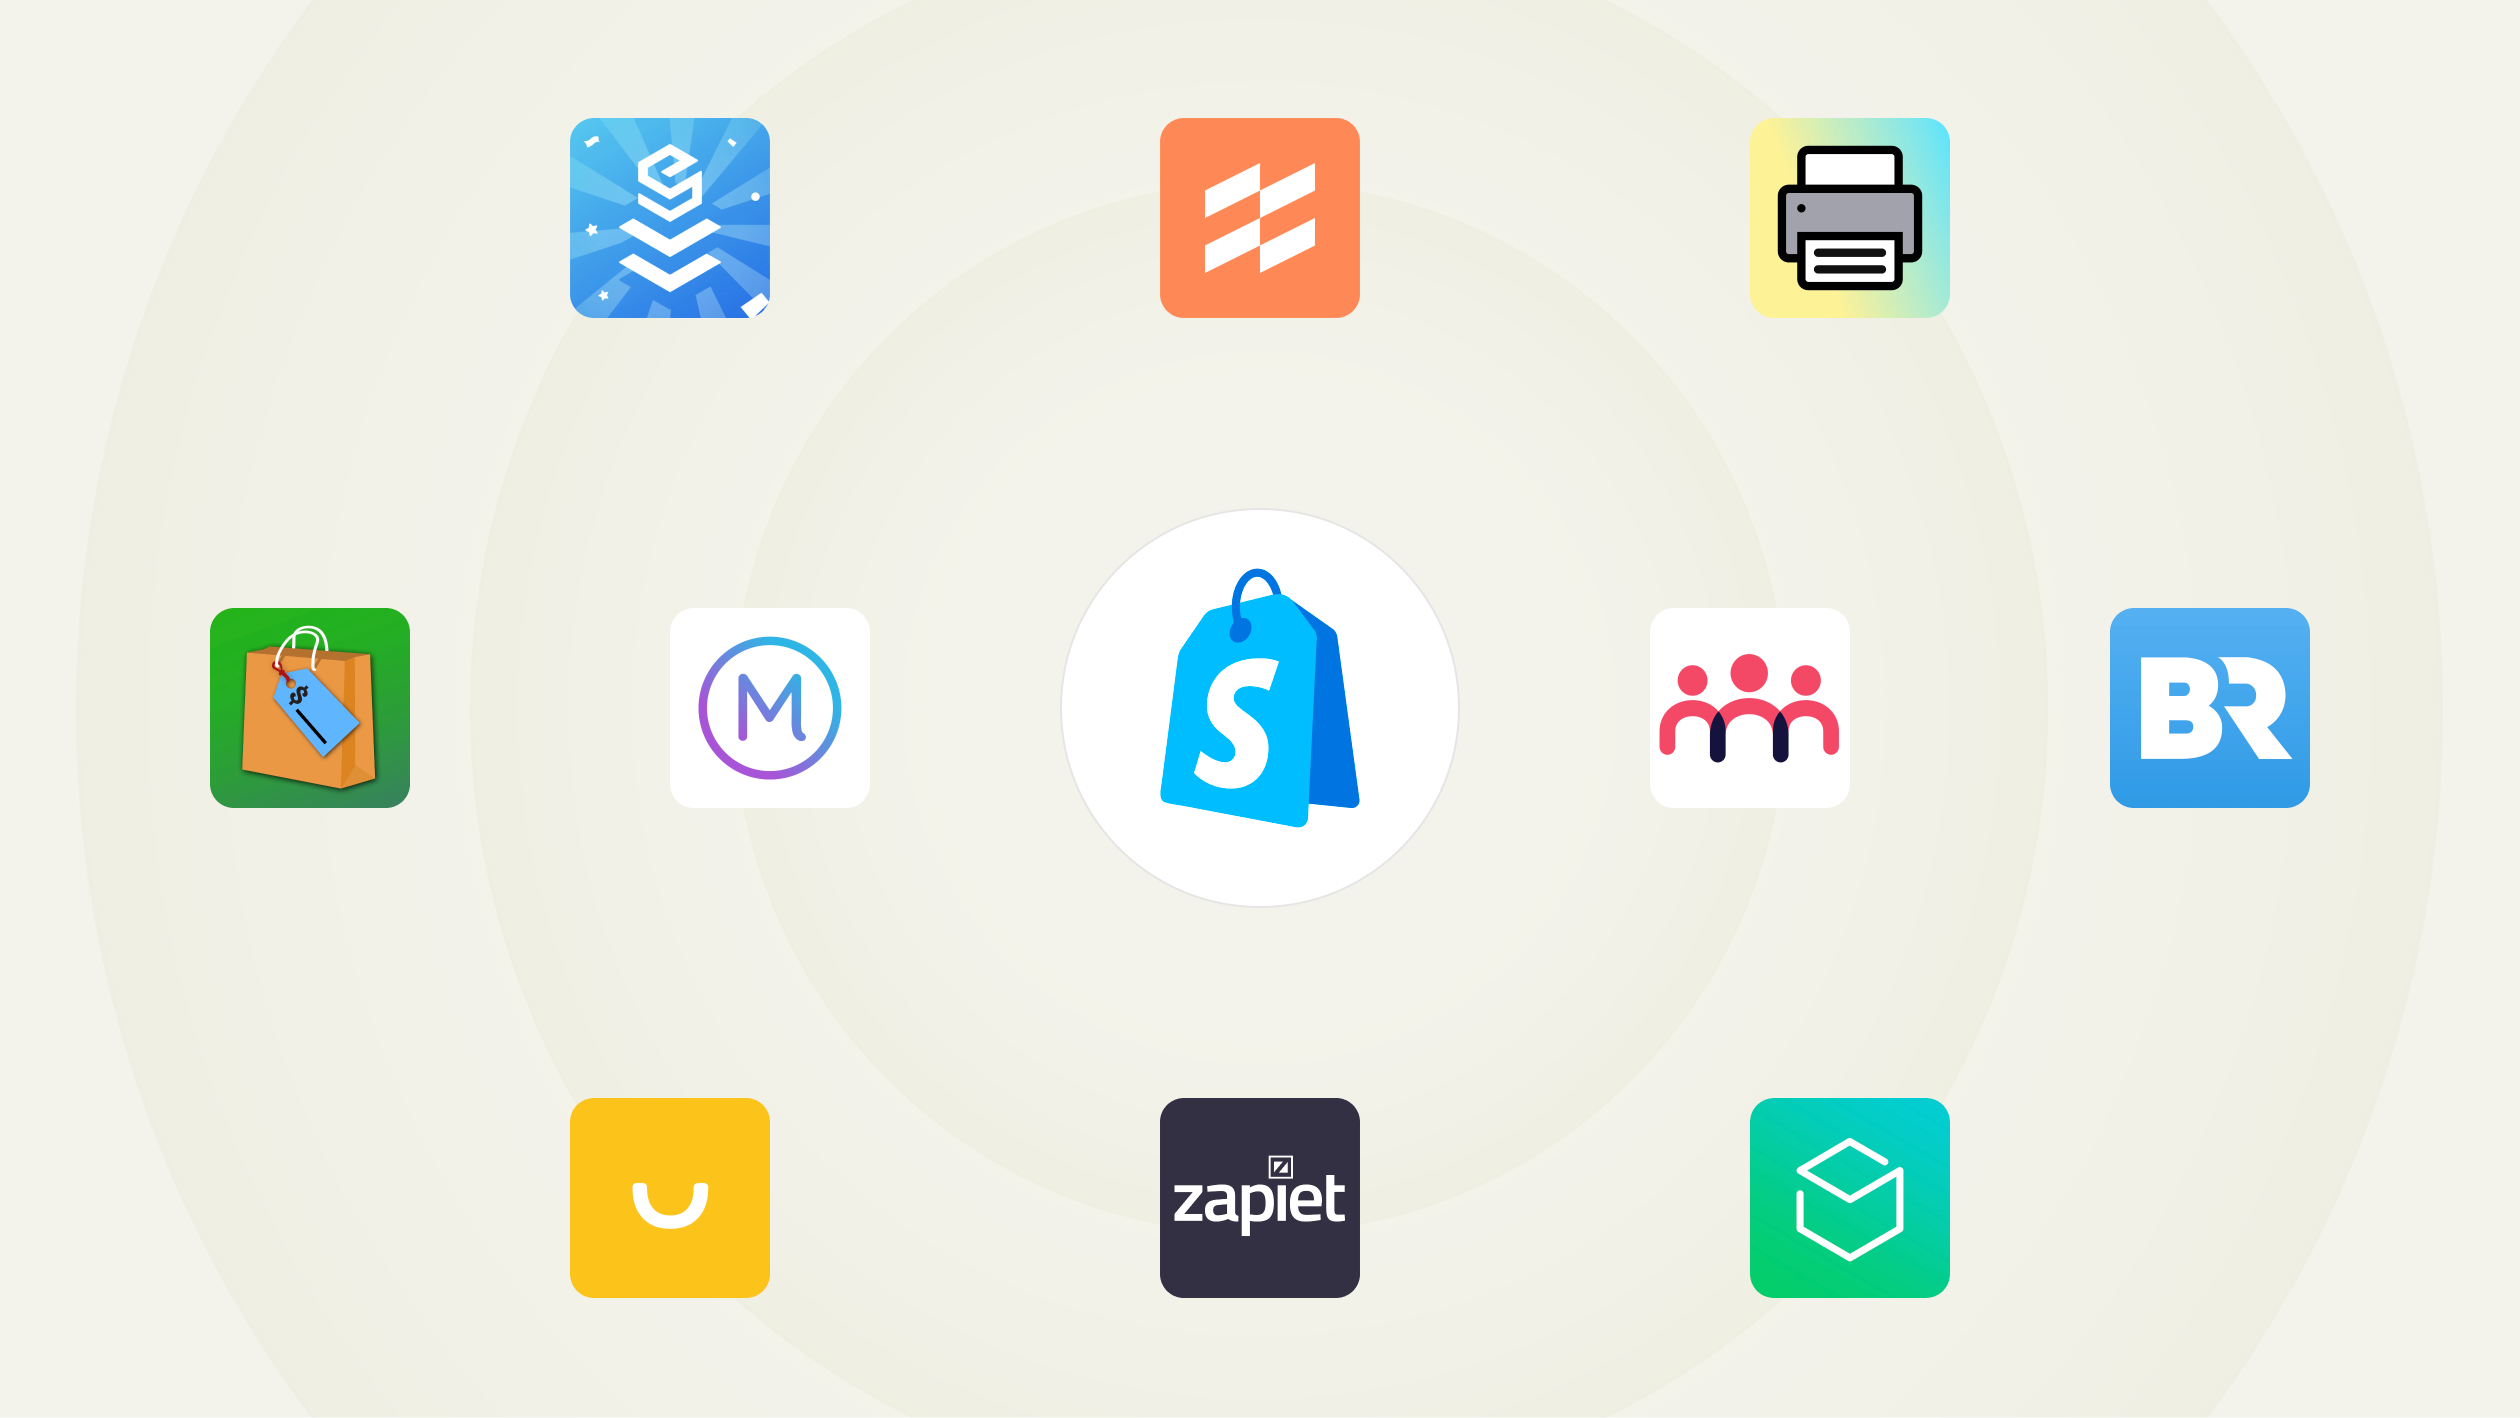 一组应用图标。中间是 Shopify POS logo；周围是一些热门应用的图标：EasyTeam、Filljoy、Zapiet、Optizio、Stocky、Order Printer、Smile、Better Reports、Marsello 和 Endear。